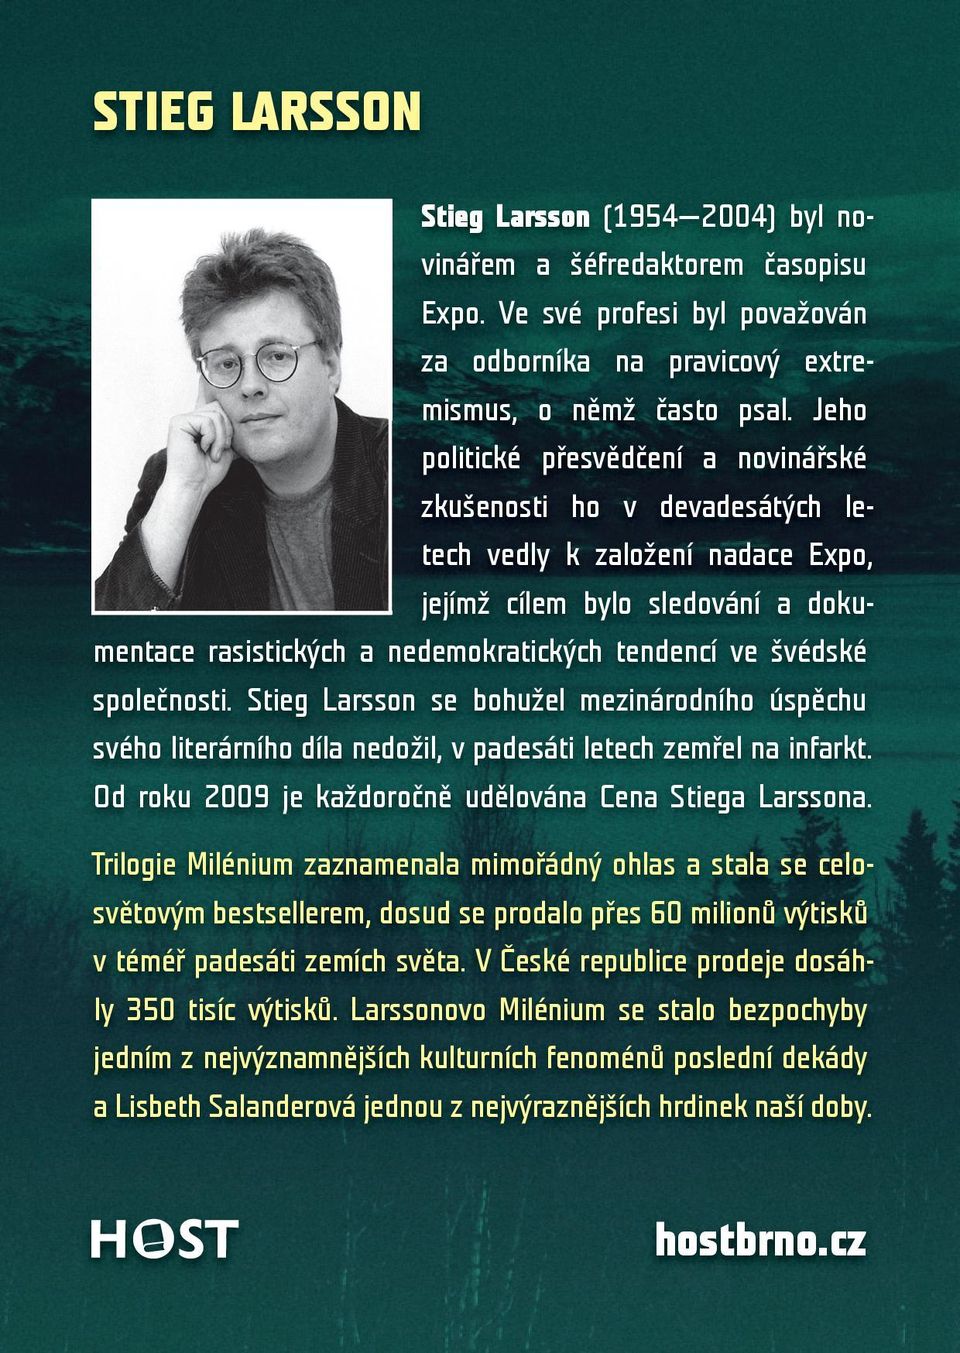 společnosti. Stieg Larsson se bohužel mezinárodního úspěchu svého literárního díla nedožil, v padesáti letech zemřel na infarkt. Od roku 2009 je každoročně udělována Cena Stiega Larssona.